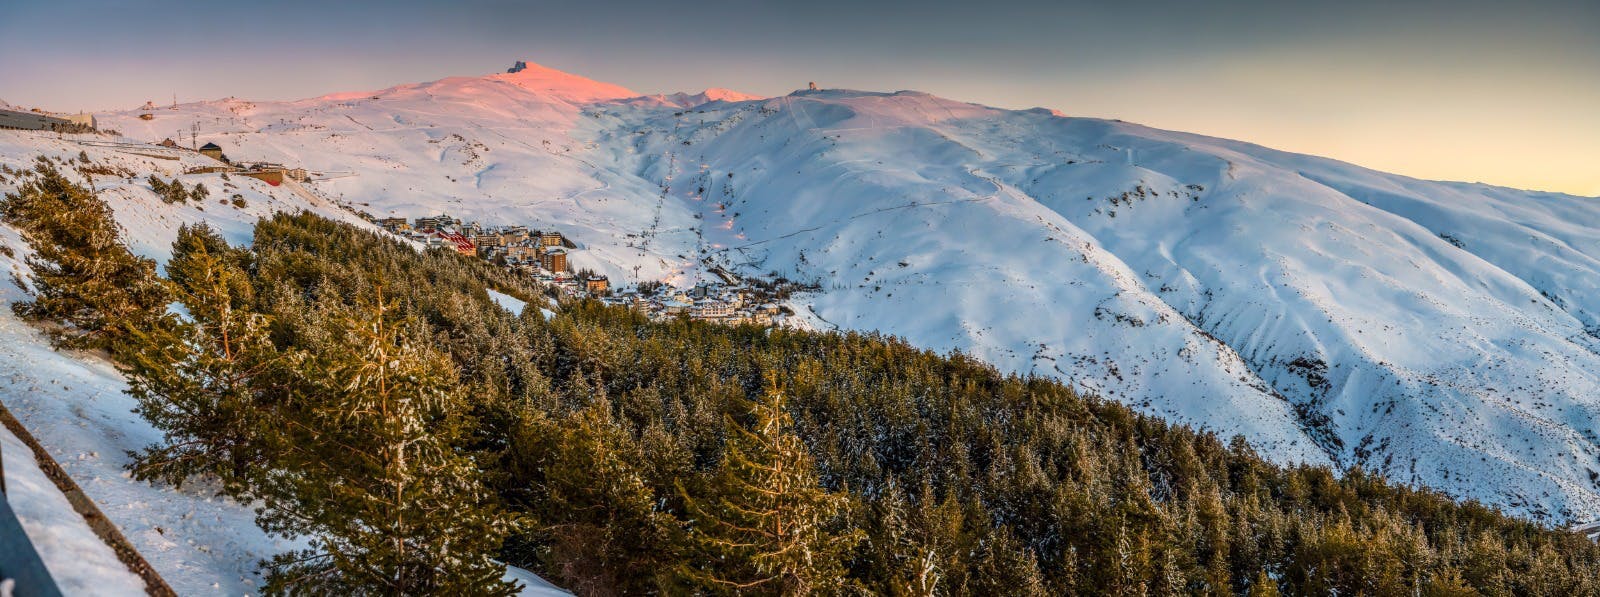 Image 32 of PepeMarinSN9 2 in Cosentino, Official Sponsor of Sierra Nevada's Ski Resort - Cosentino